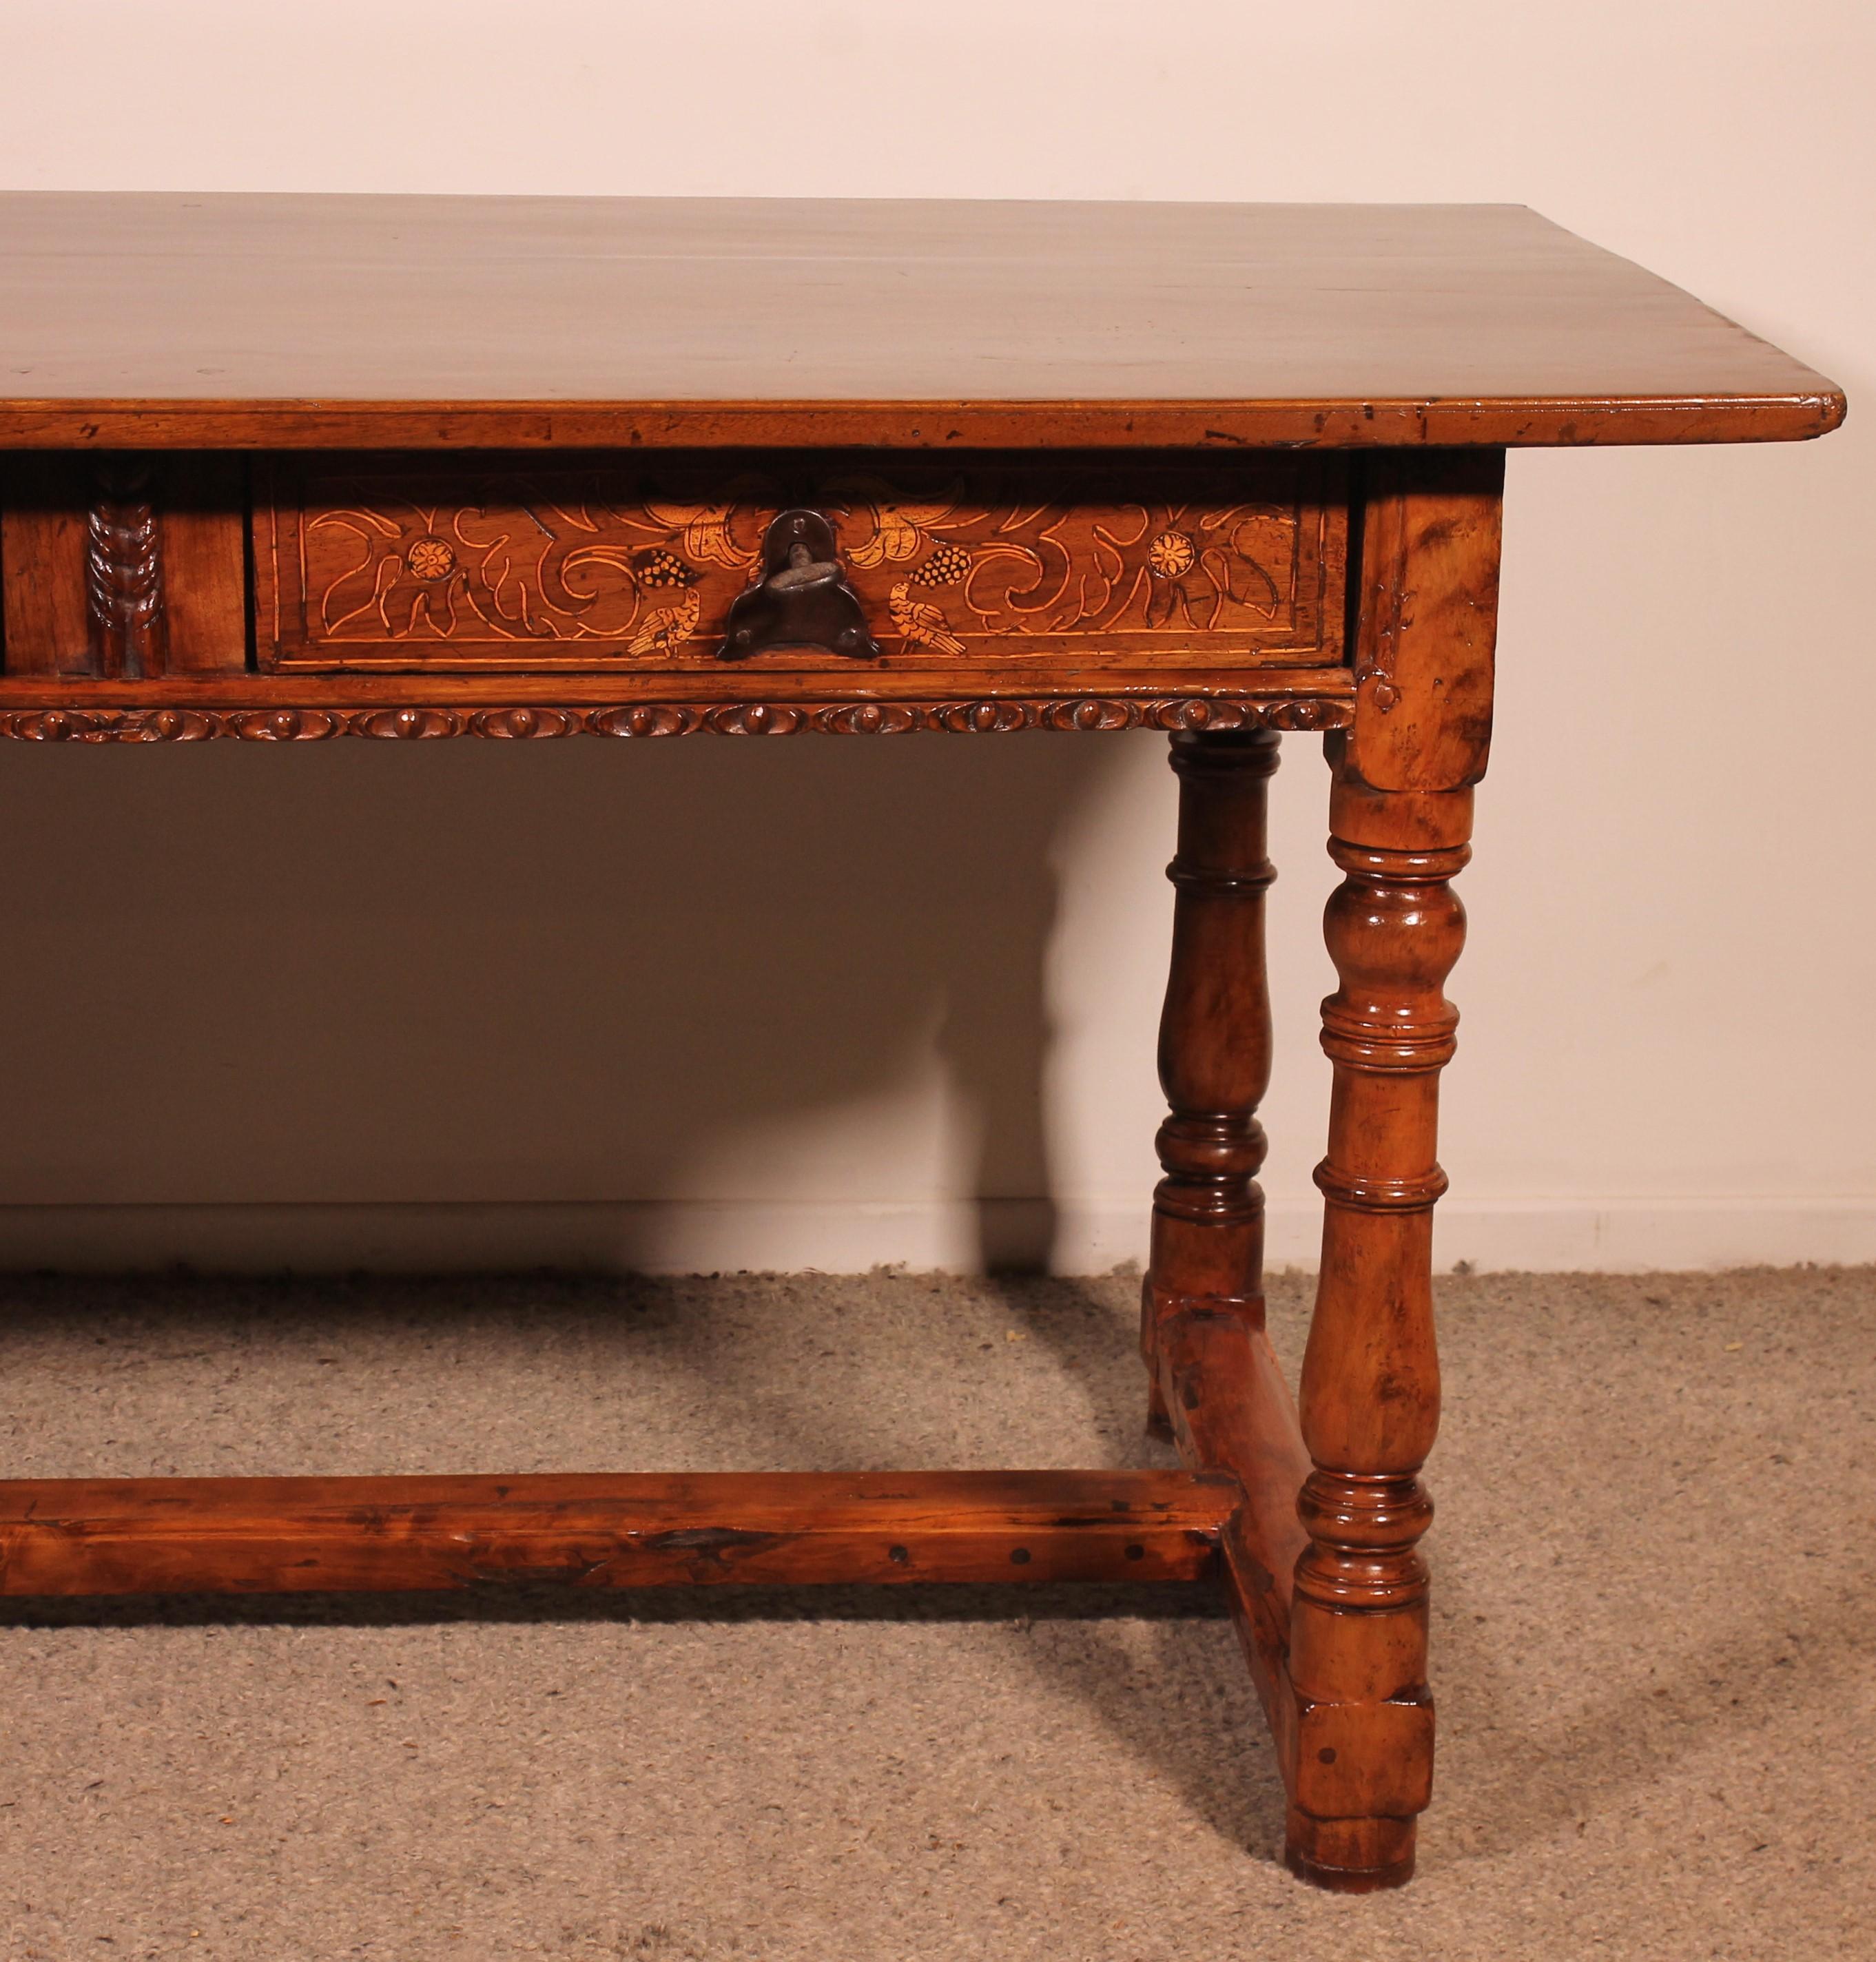 Prächtiger spanischer Renaissancetisch aus Nussbaum vom Anfang des 17. Jahrhunderts
Tisch von außergewöhnlicher Qualität. Museumsqualität

Eleganter Schreibtisch oder Präsentationstisch mit zwei Schubladen. Die beiden Schubladen sind mit